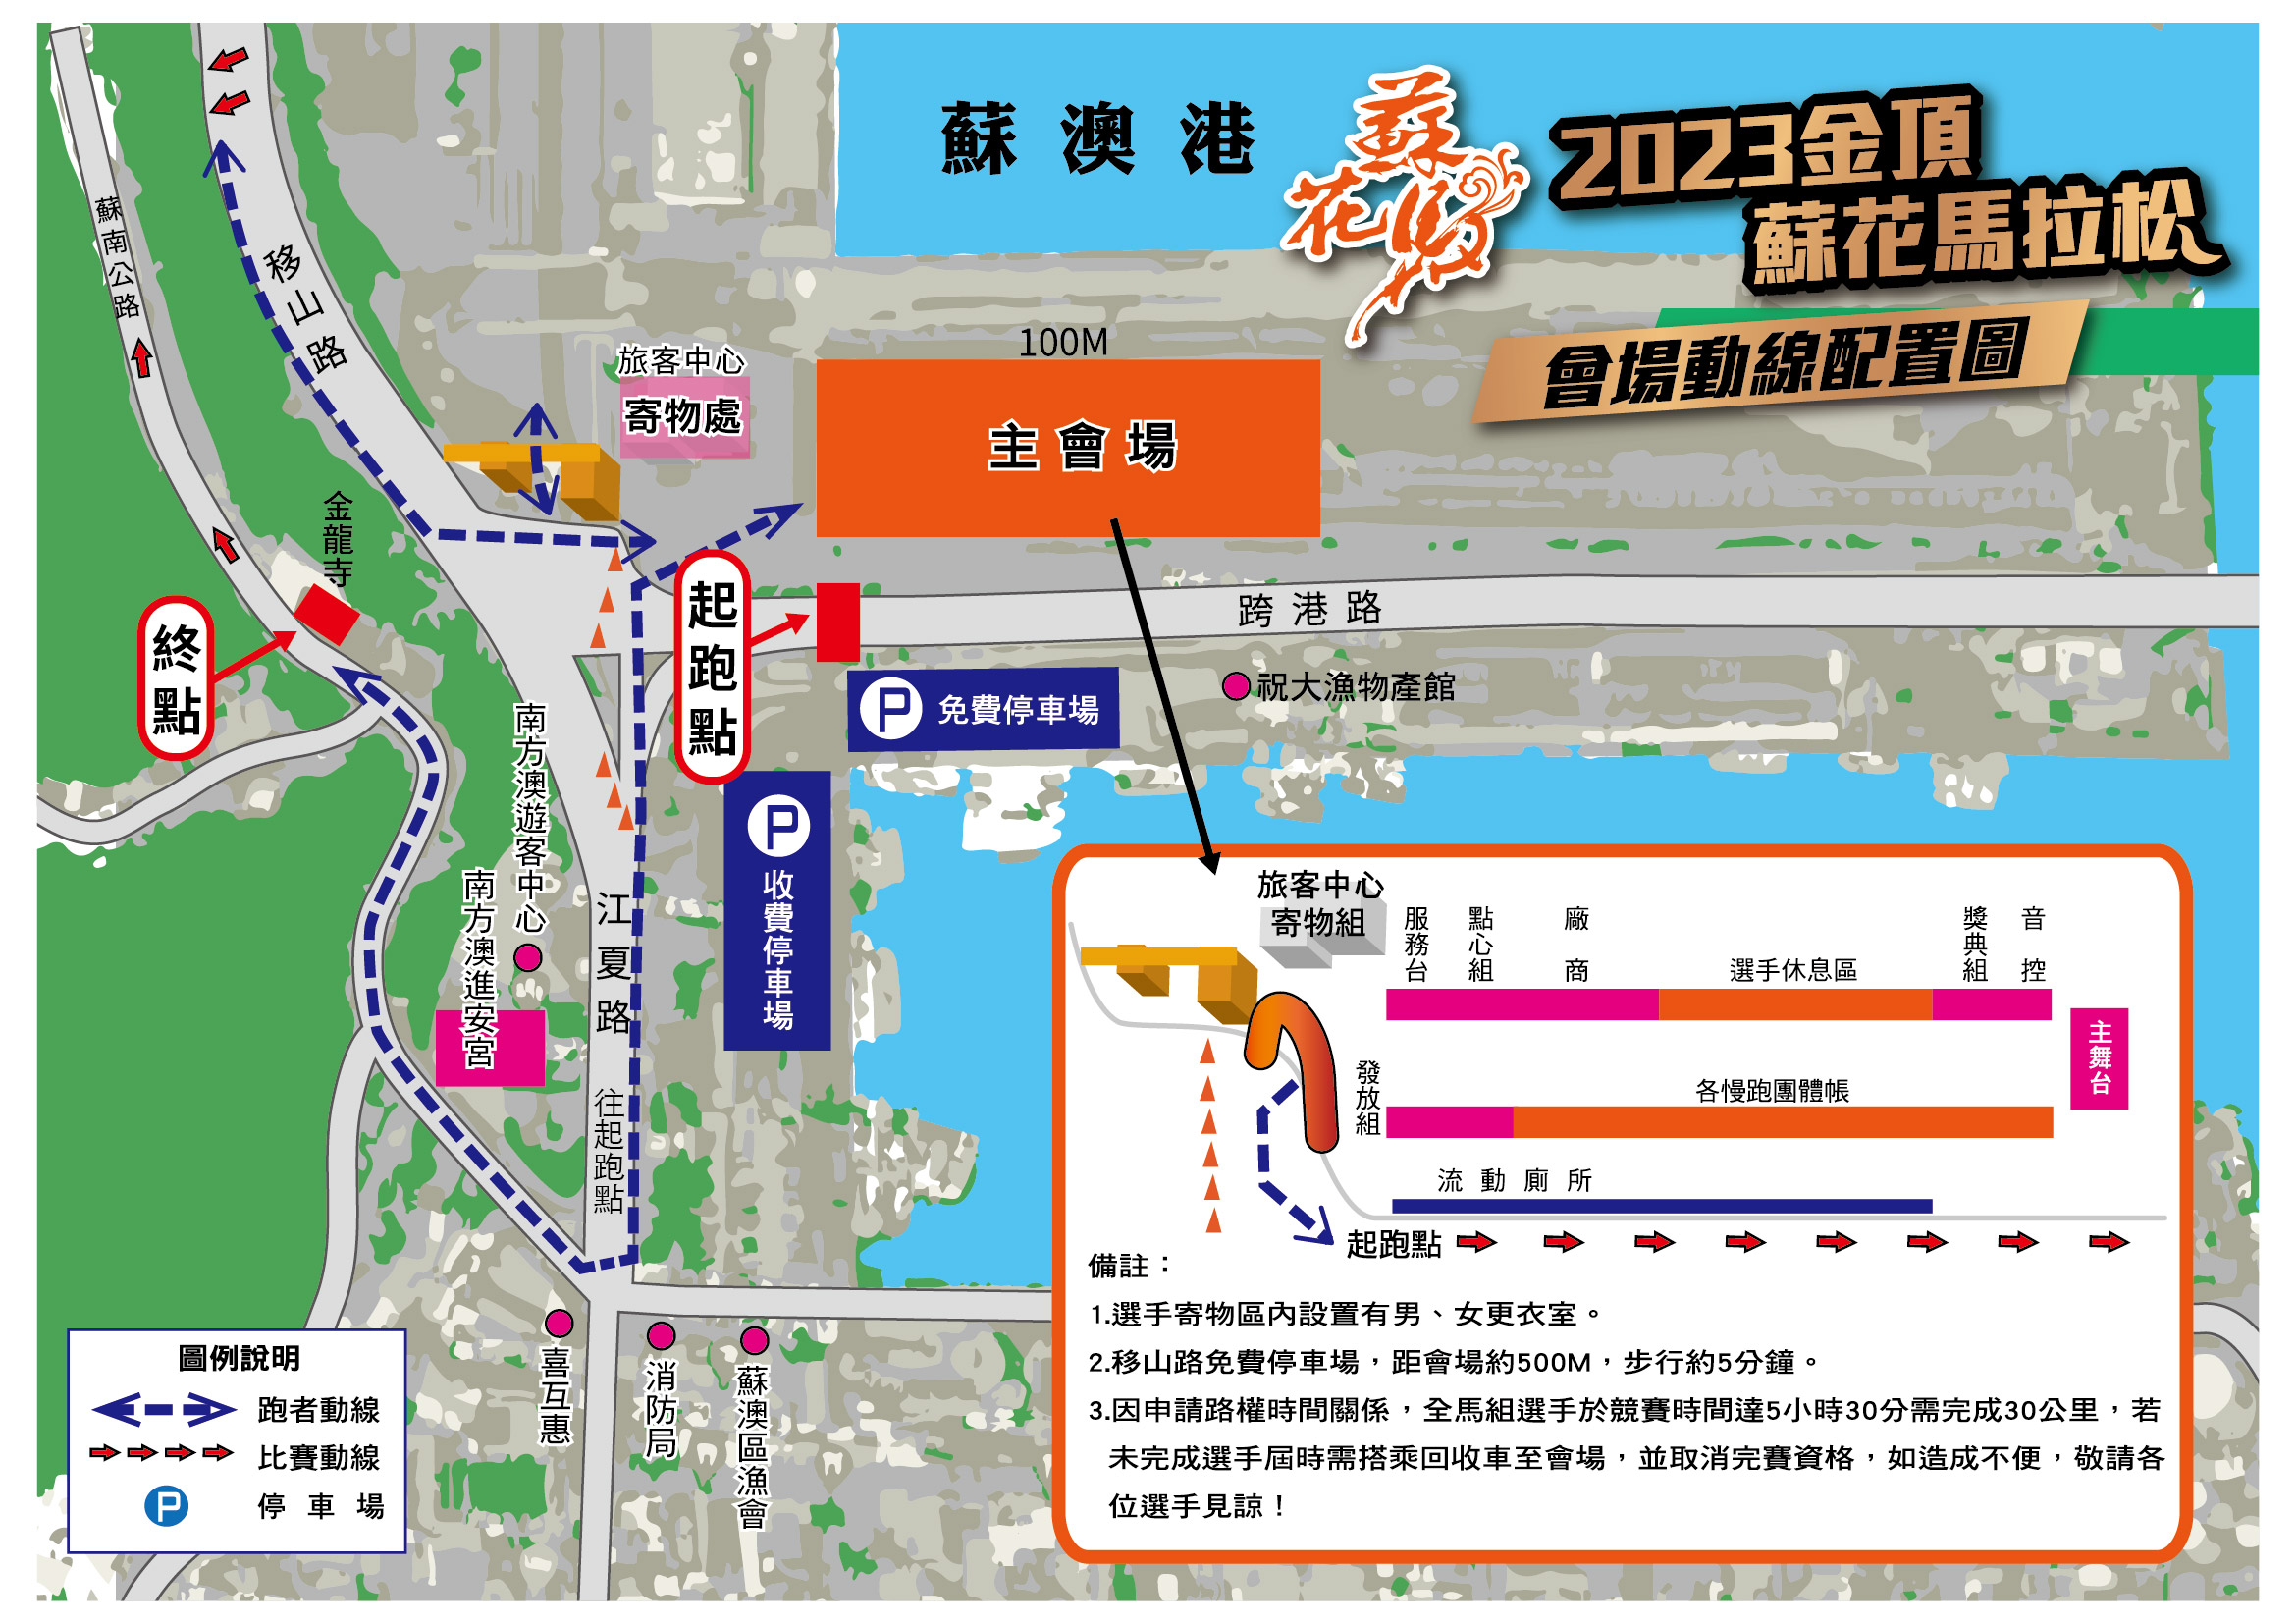 樂活報名網 - 2023 金頂蘇花馬拉松-停車資訊